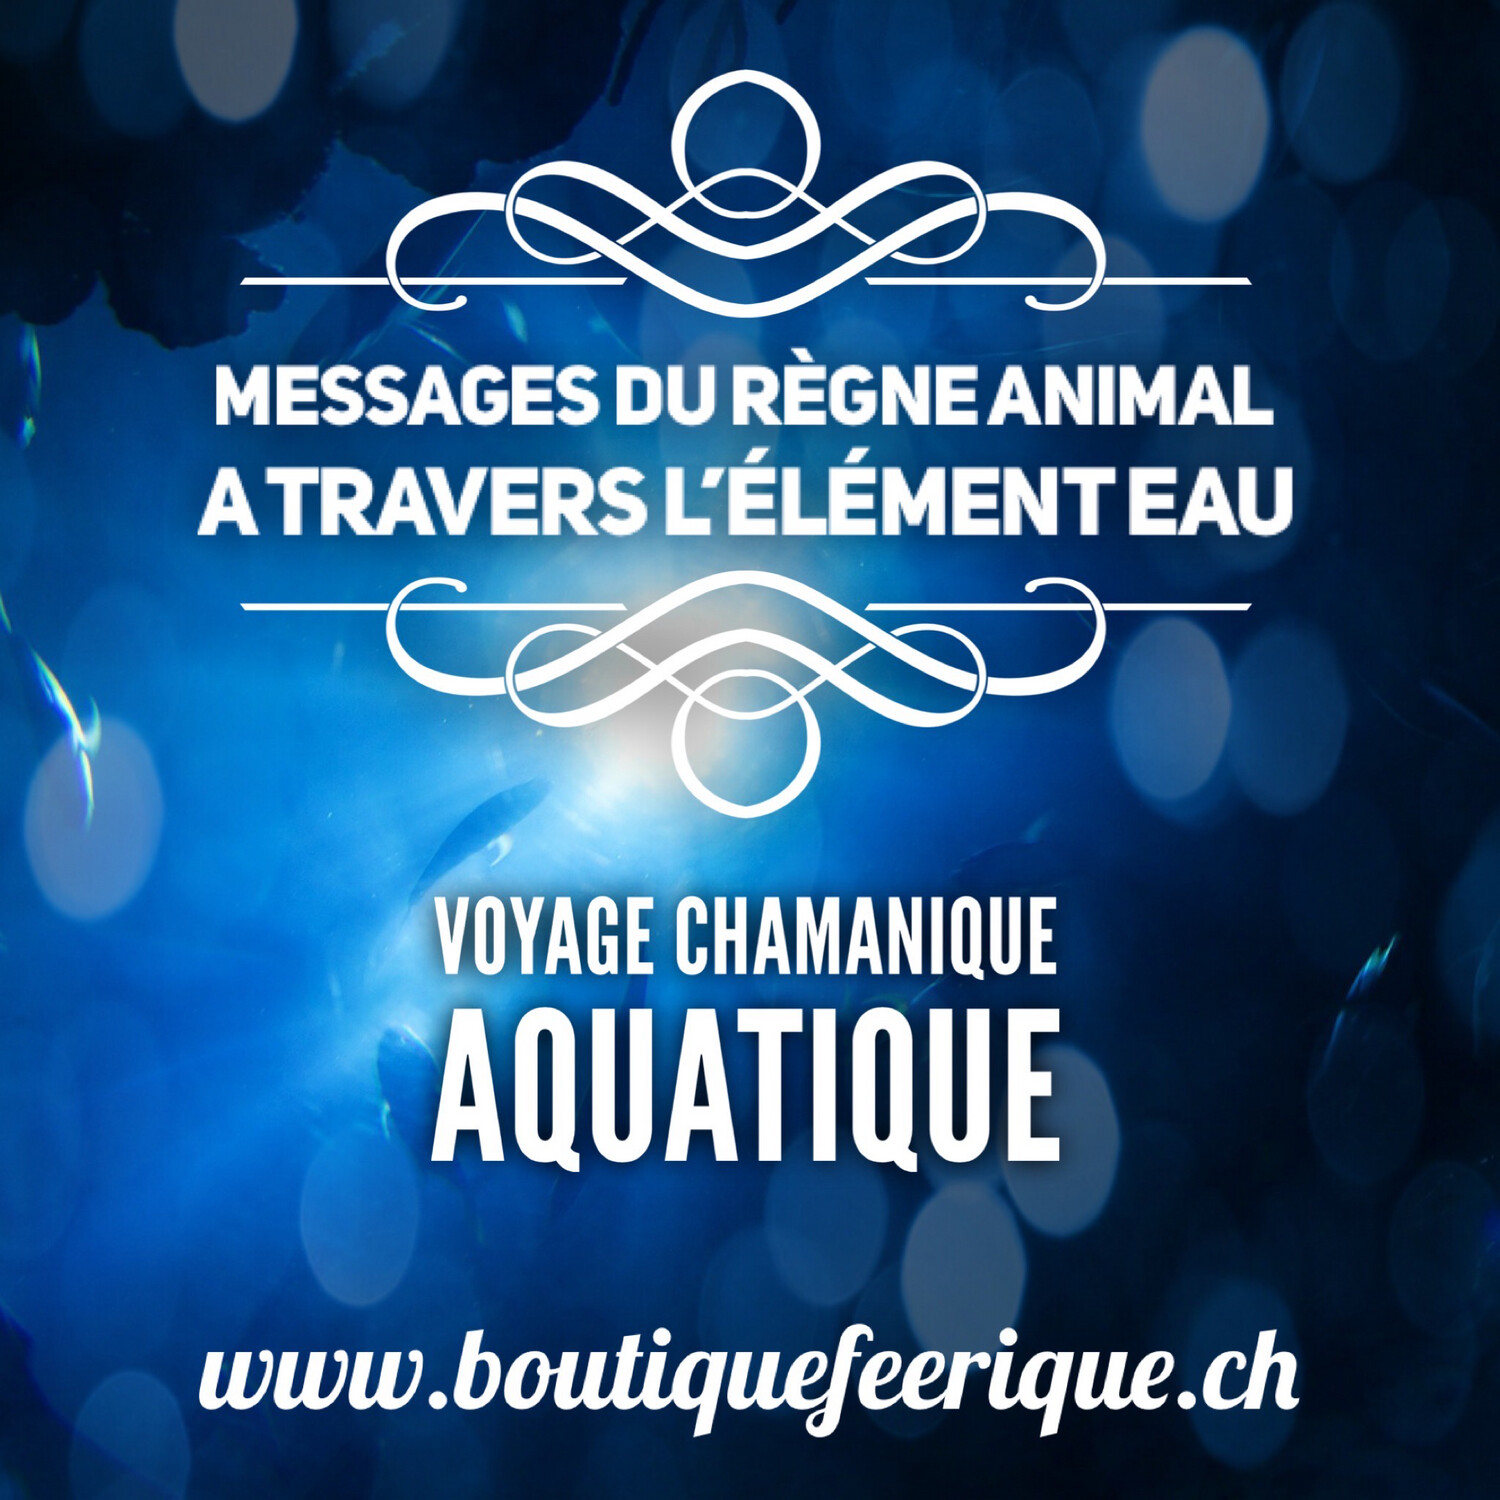 Voyage chamanique aquatique « messages du règne animal à travers l’élément eau »